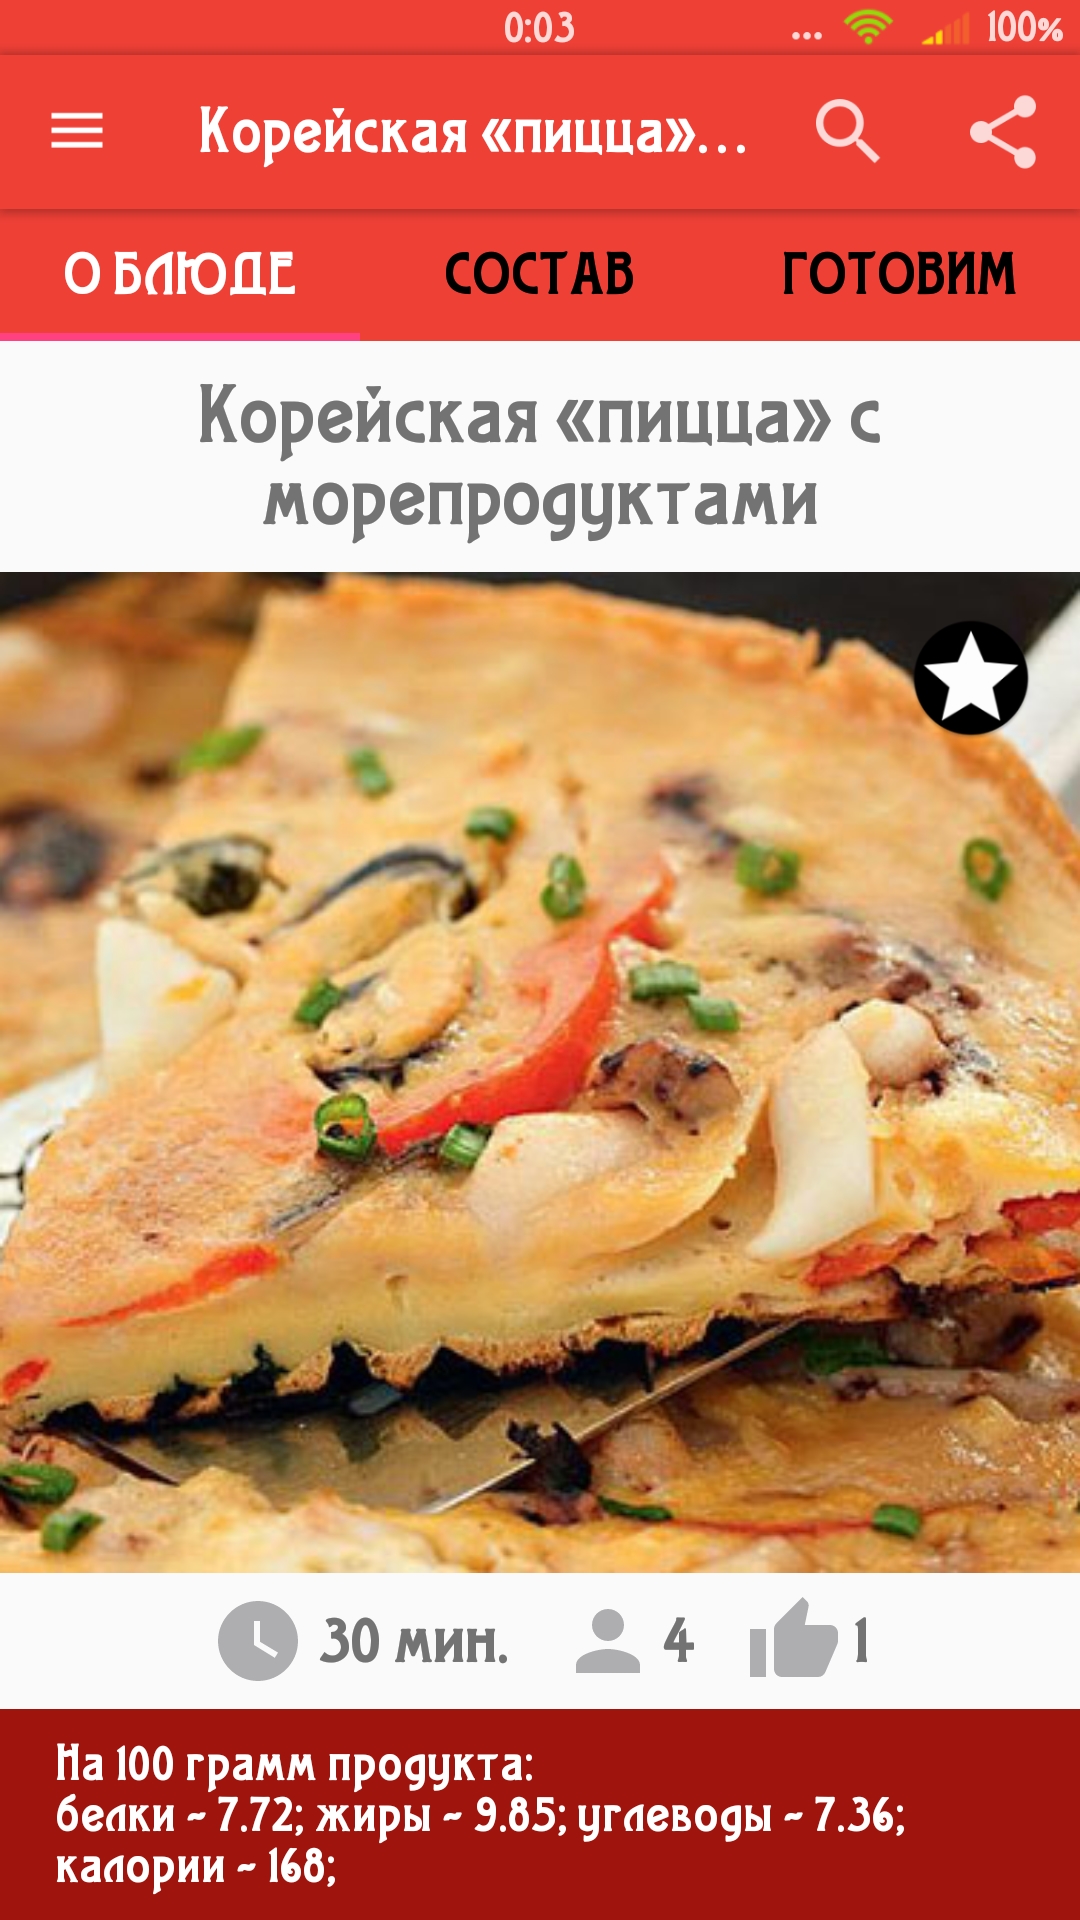 читать онлайн рецепты пиццы фото 91